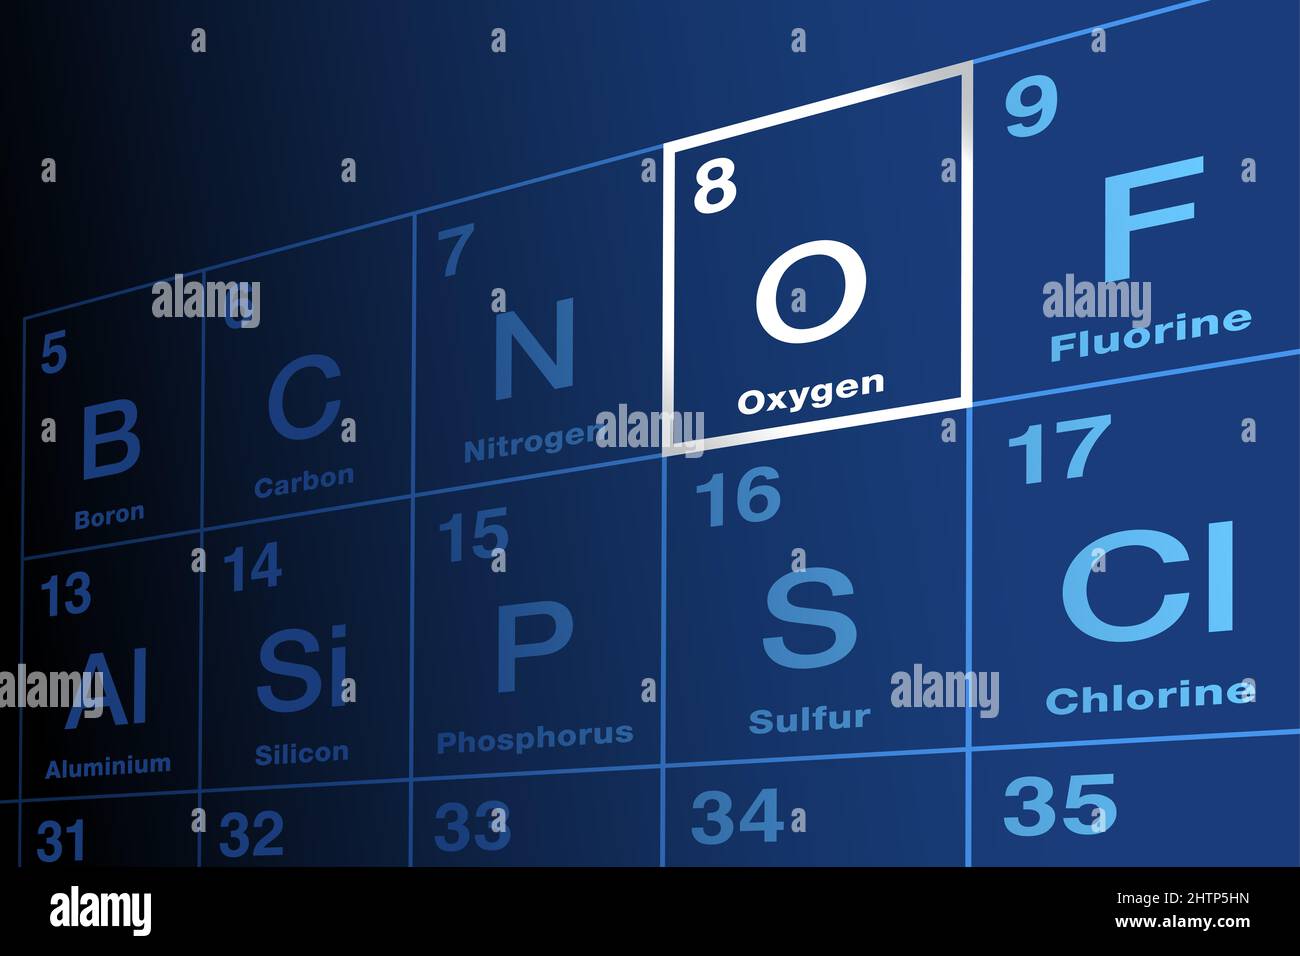 Oxygène, élément chimique sur le tableau périodique des éléments. Symbole d'élément O et numéro atomique 8. Agent non métallique et oxydant hautement réactif. Banque D'Images